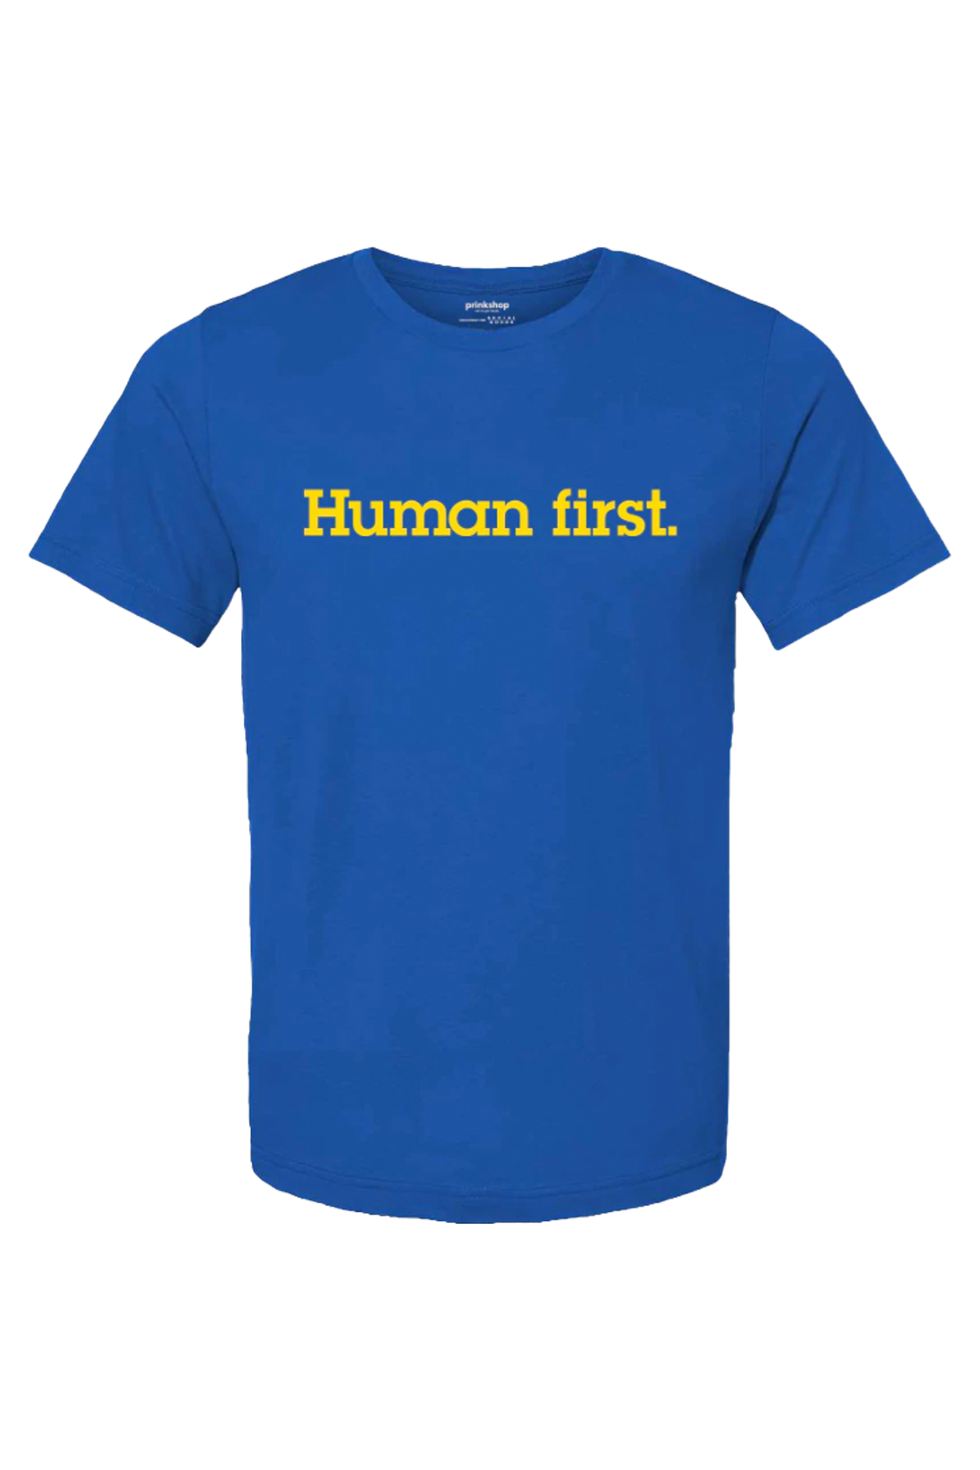 Human First T-shirt for Ukraine